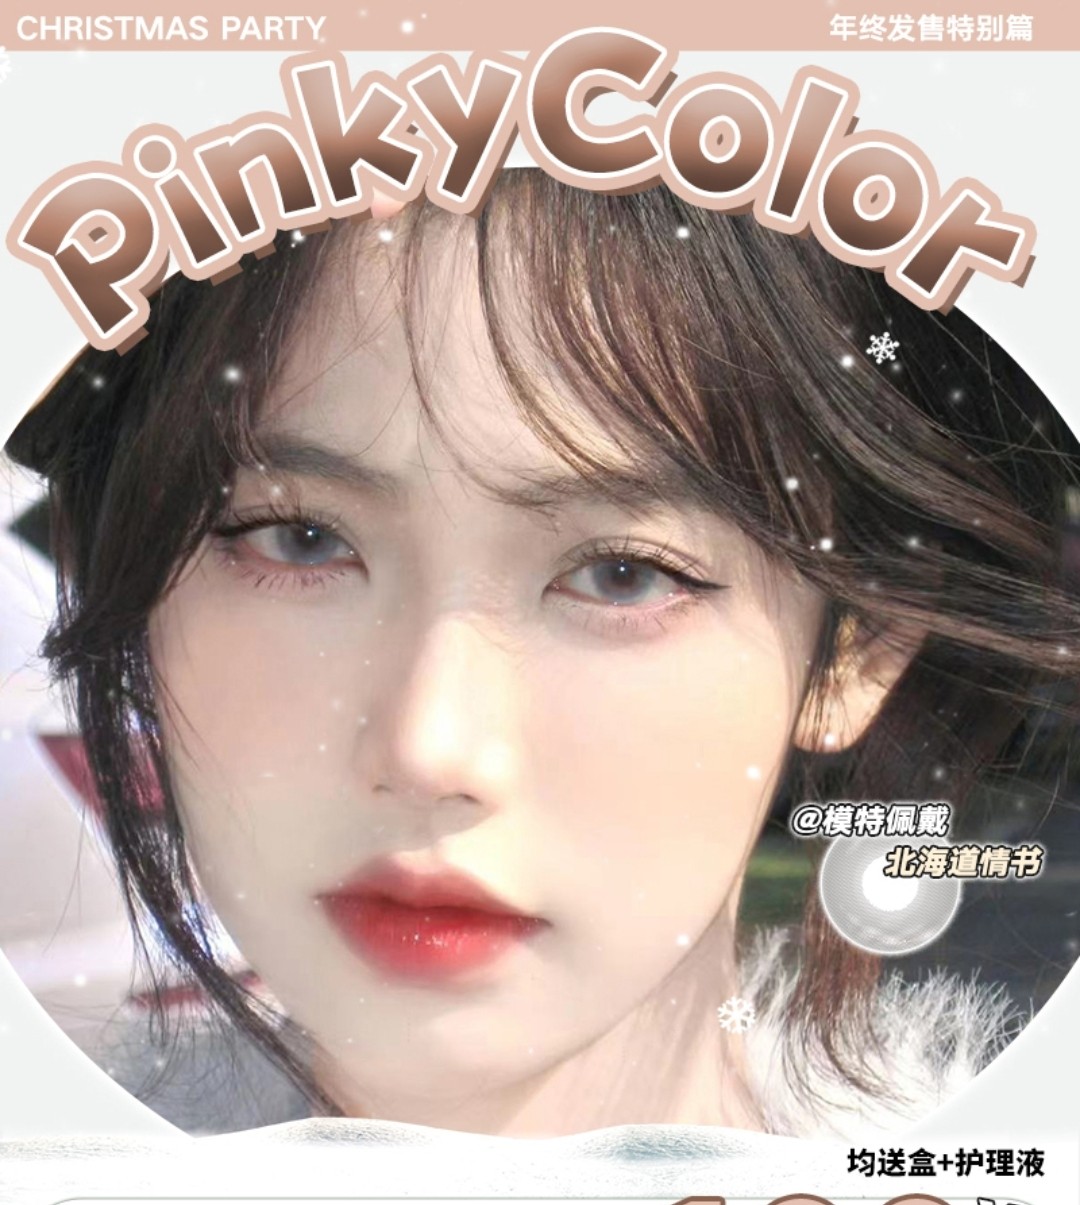 【年抛】Pinkycolor 年终发售特别篇 百搭单品 高级feel直戳人心